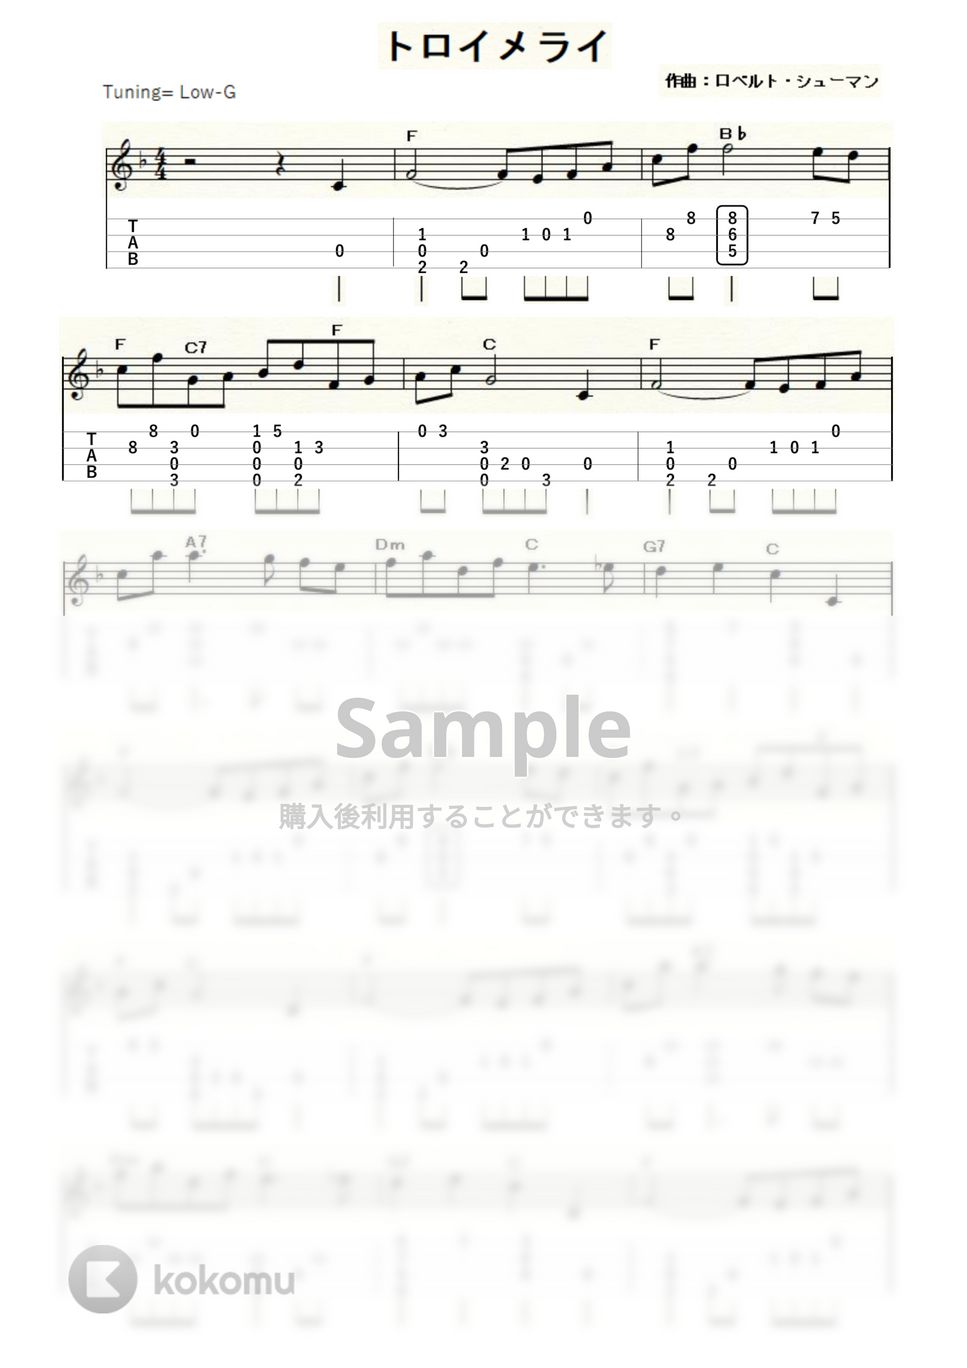 シューマン - トロイメライ (ｳｸﾚﾚｿﾛ / Low-G / 中級) by ukulelepapa